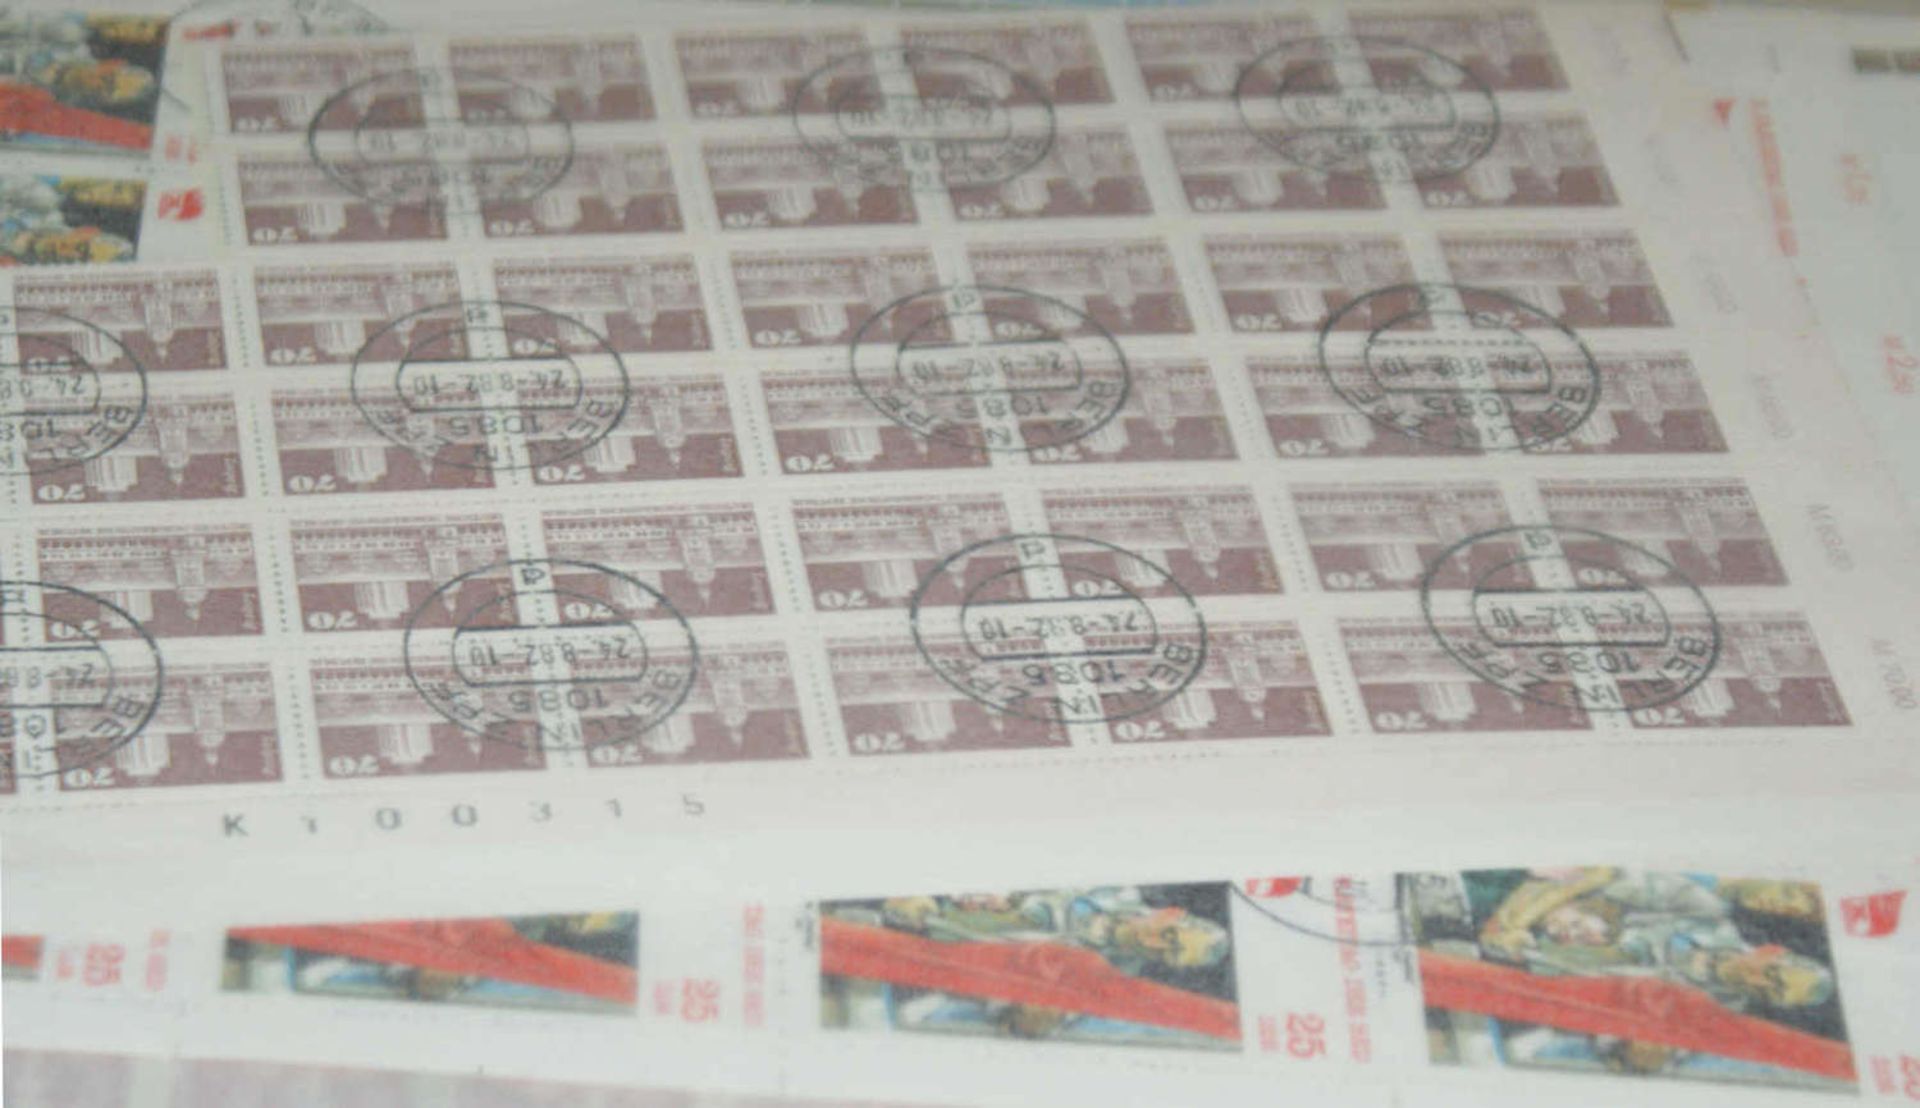 BRD - Briefmarken Dubletten Konvolut, bestehend aus 23 Alben, teilweise schlecht gelagert. - Bild 5 aus 5